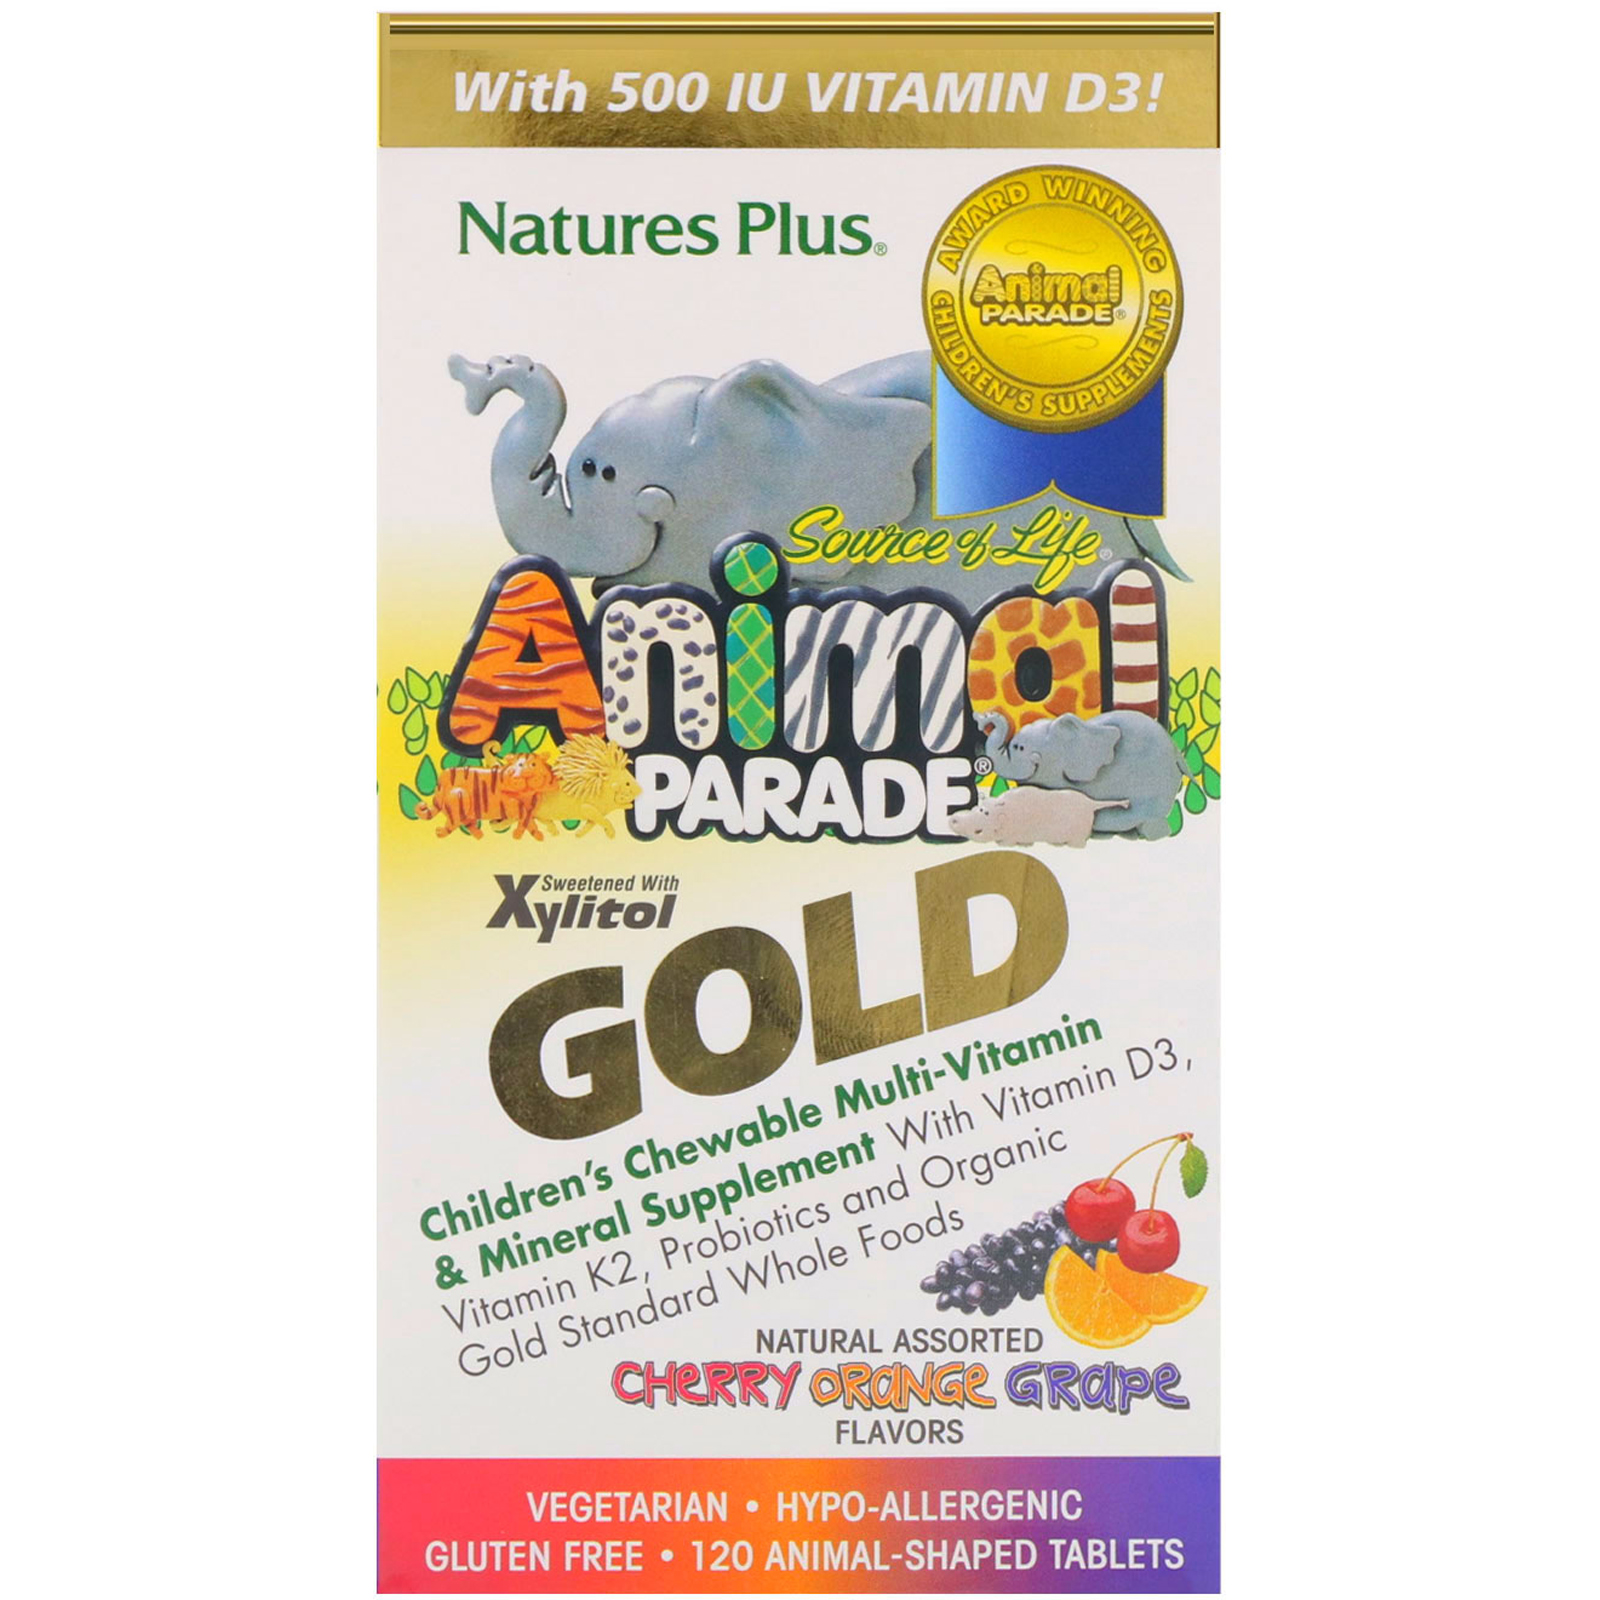 Nature's Plus, Парад зверей Gold от Source of Life, мультивитаминная жевательная добавка для детей с минералами, ассорти из натуральных ароматизаторов, 120 таблеток в форме животных